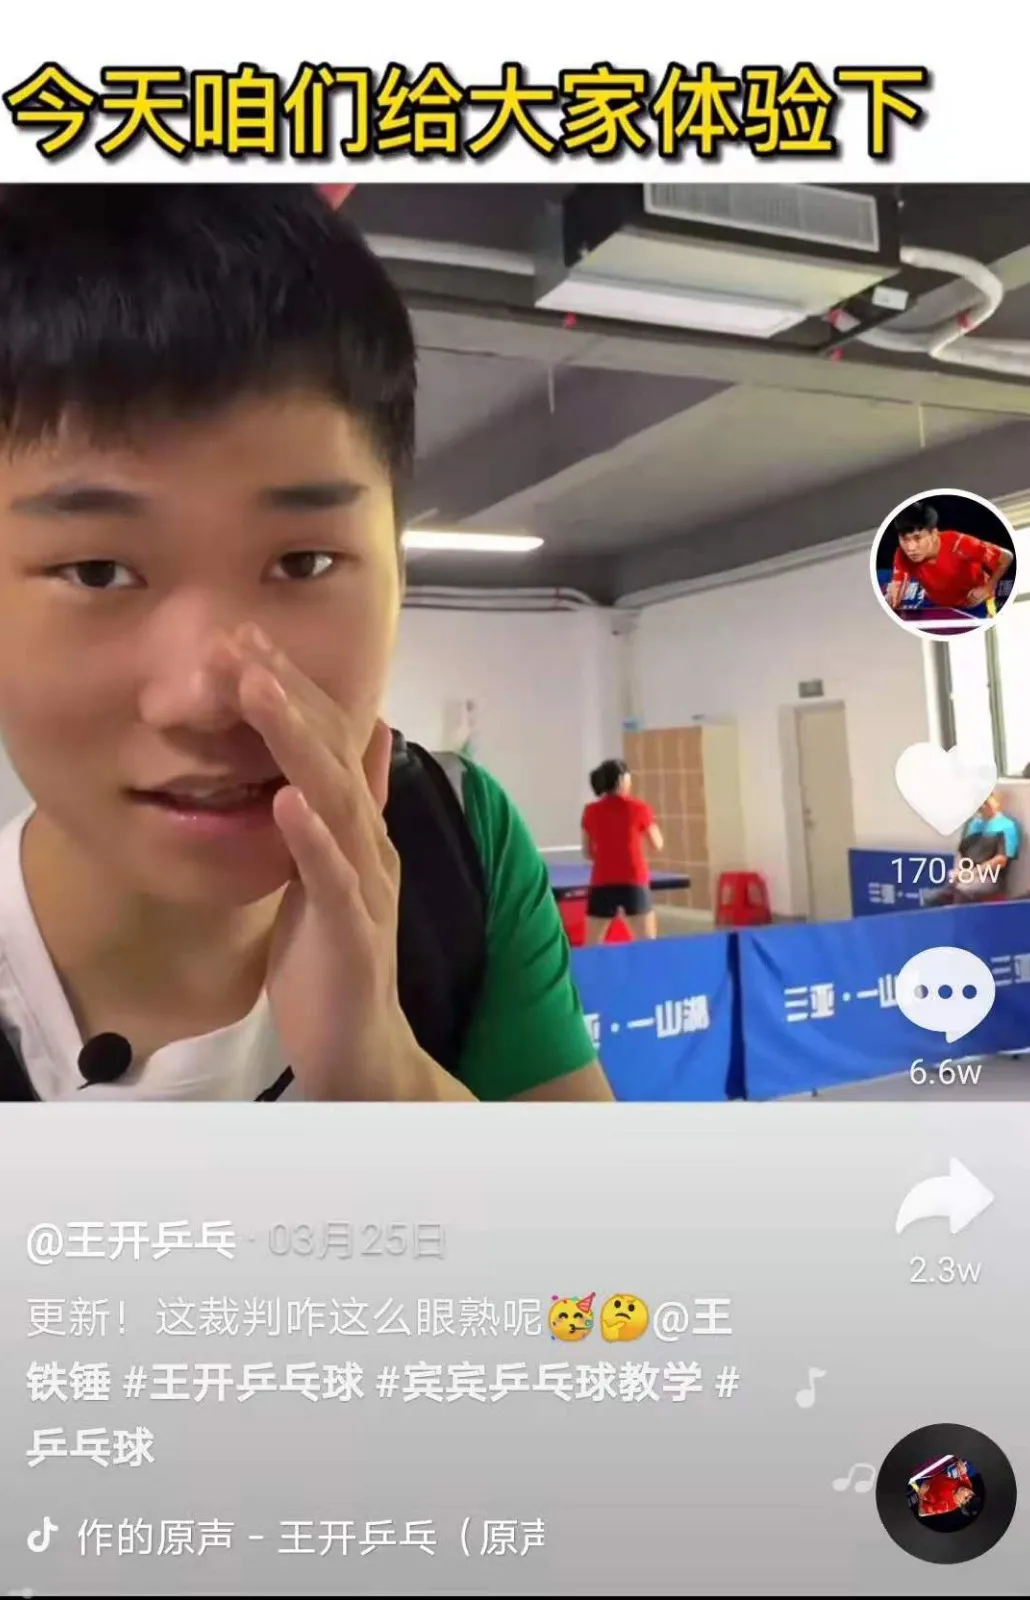 王开乒乓球运动员简介乒乓球网红王开个人资料